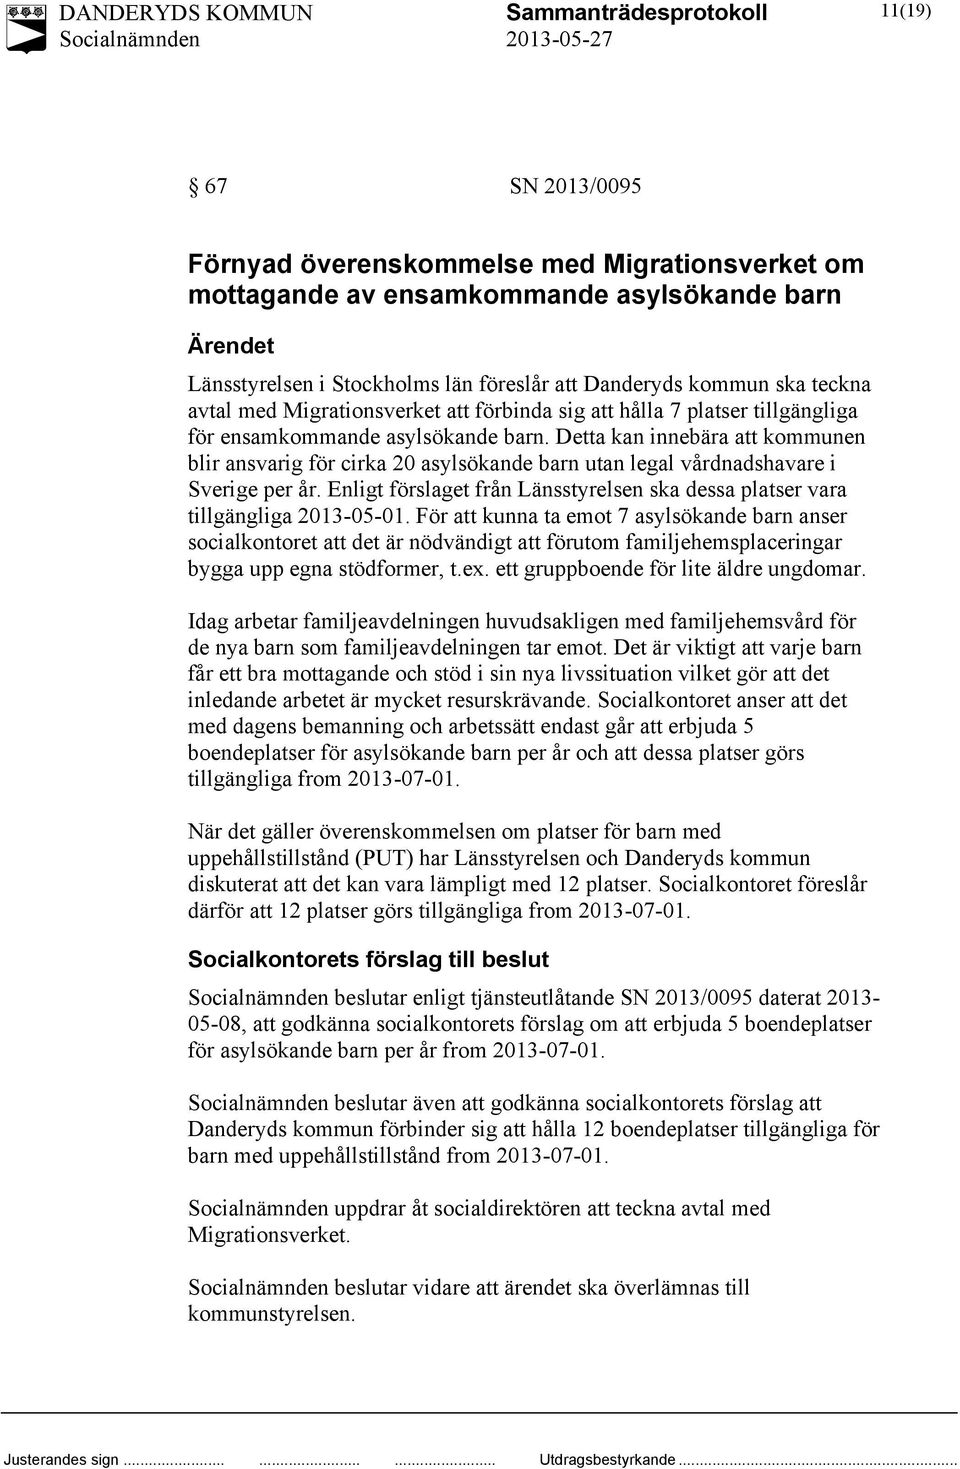 Detta kan innebära att kommunen blir ansvarig för cirka 20 asylsökande barn utan legal vårdnadshavare i Sverige per år.